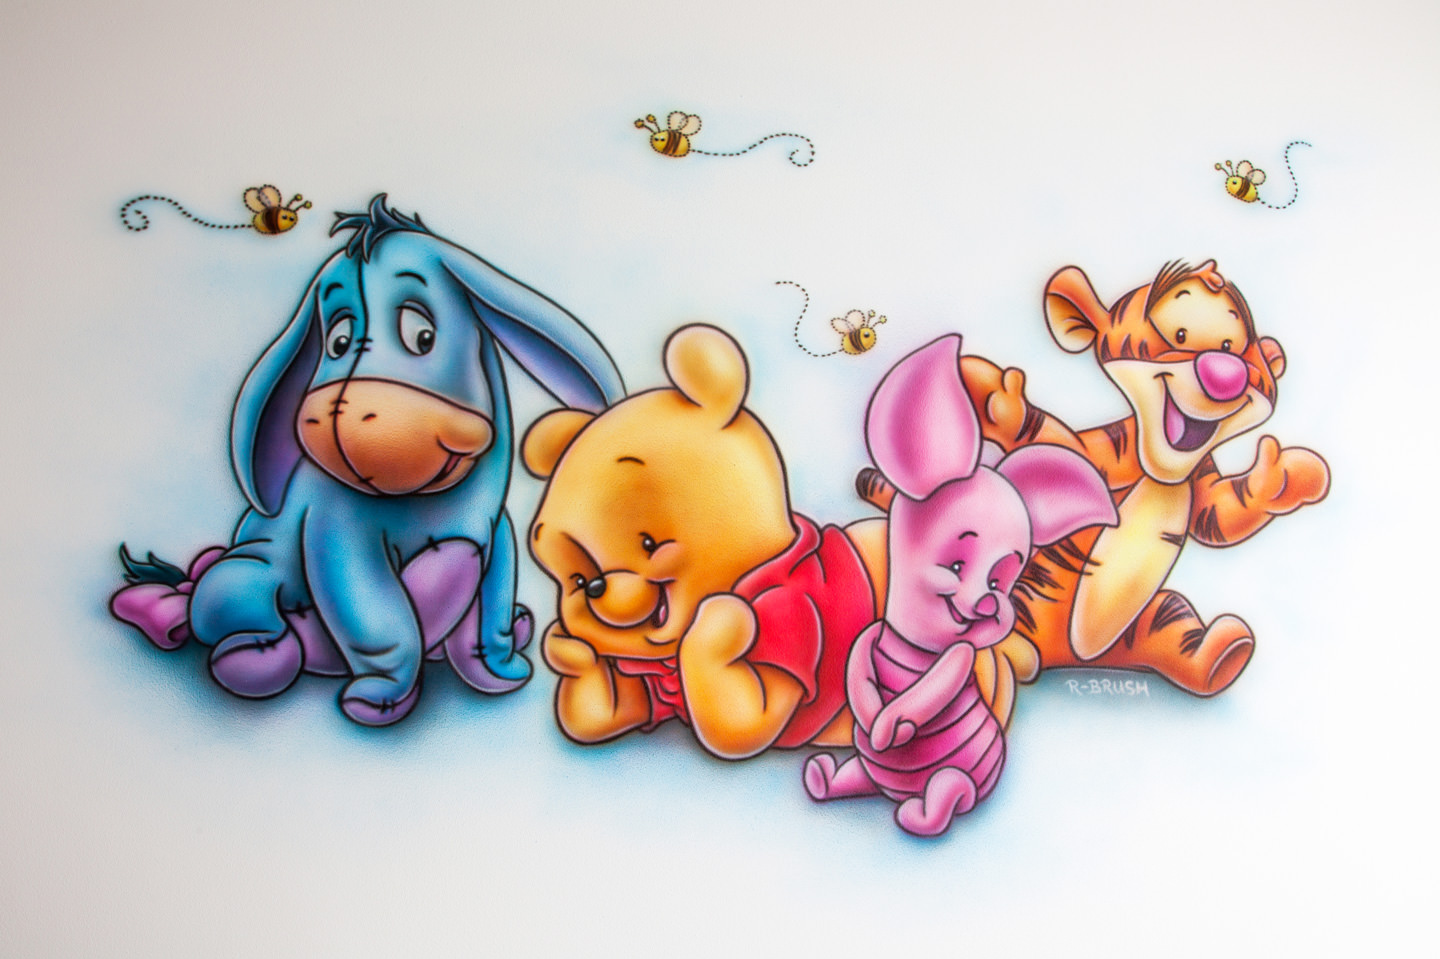 Muurschildering van Winnie the Pooh babies met vriendjes